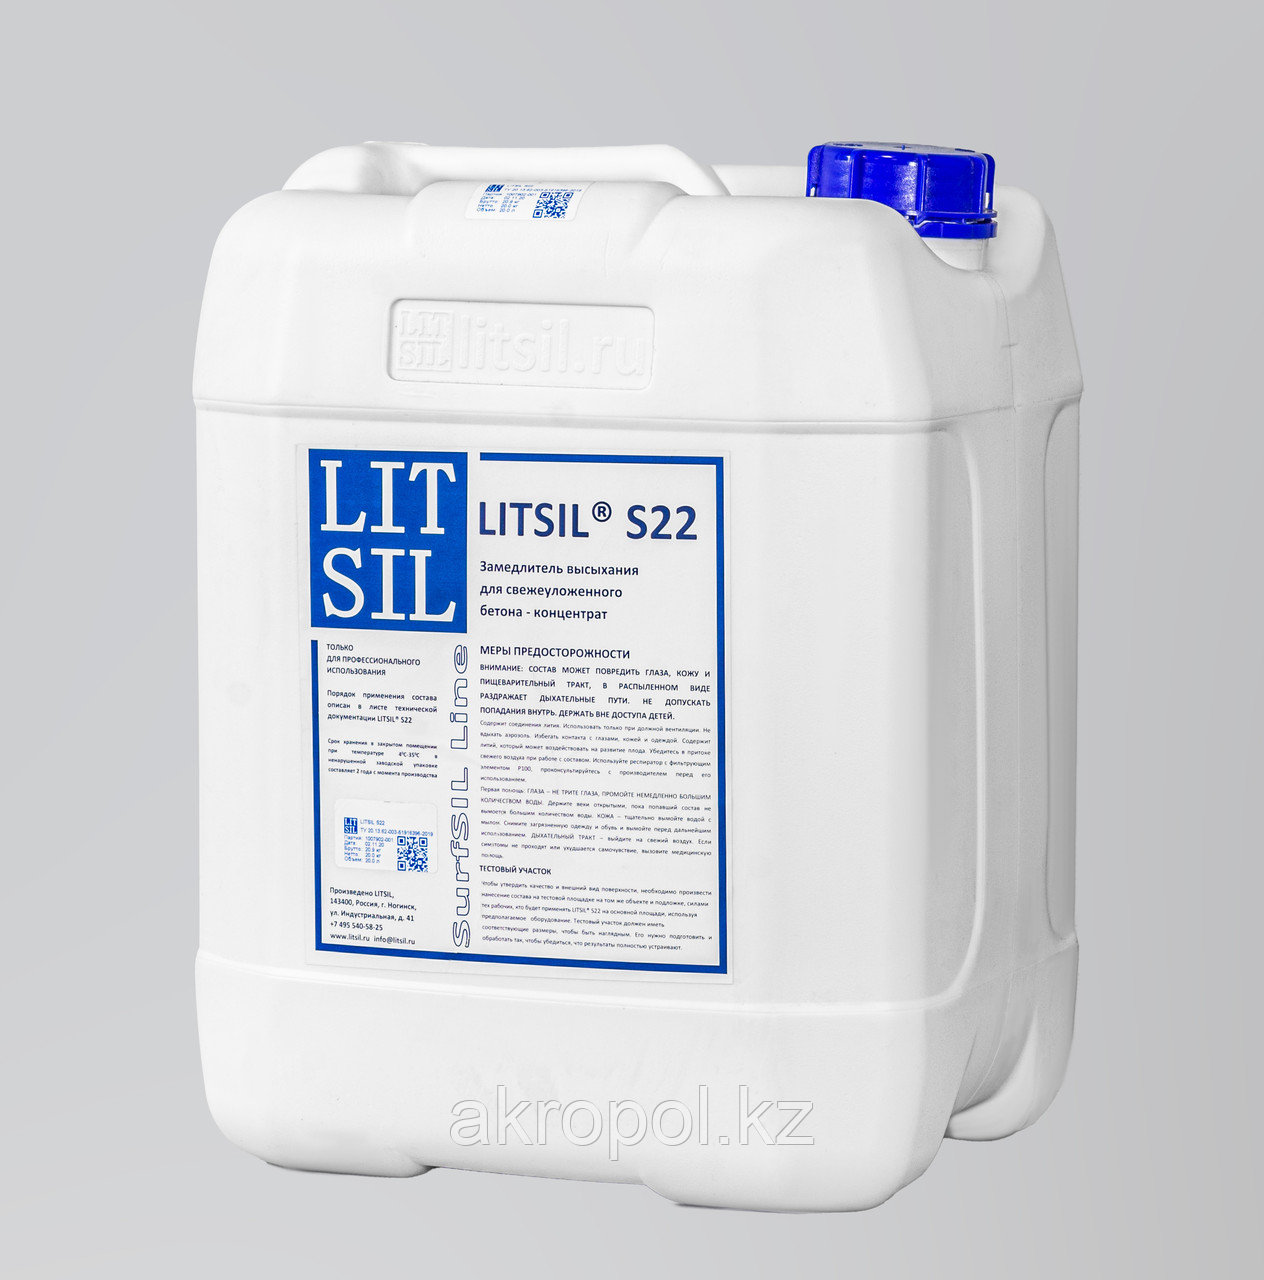 Замедлитель высыхания для свежеуложенного бетона Litsil S22, концентрат